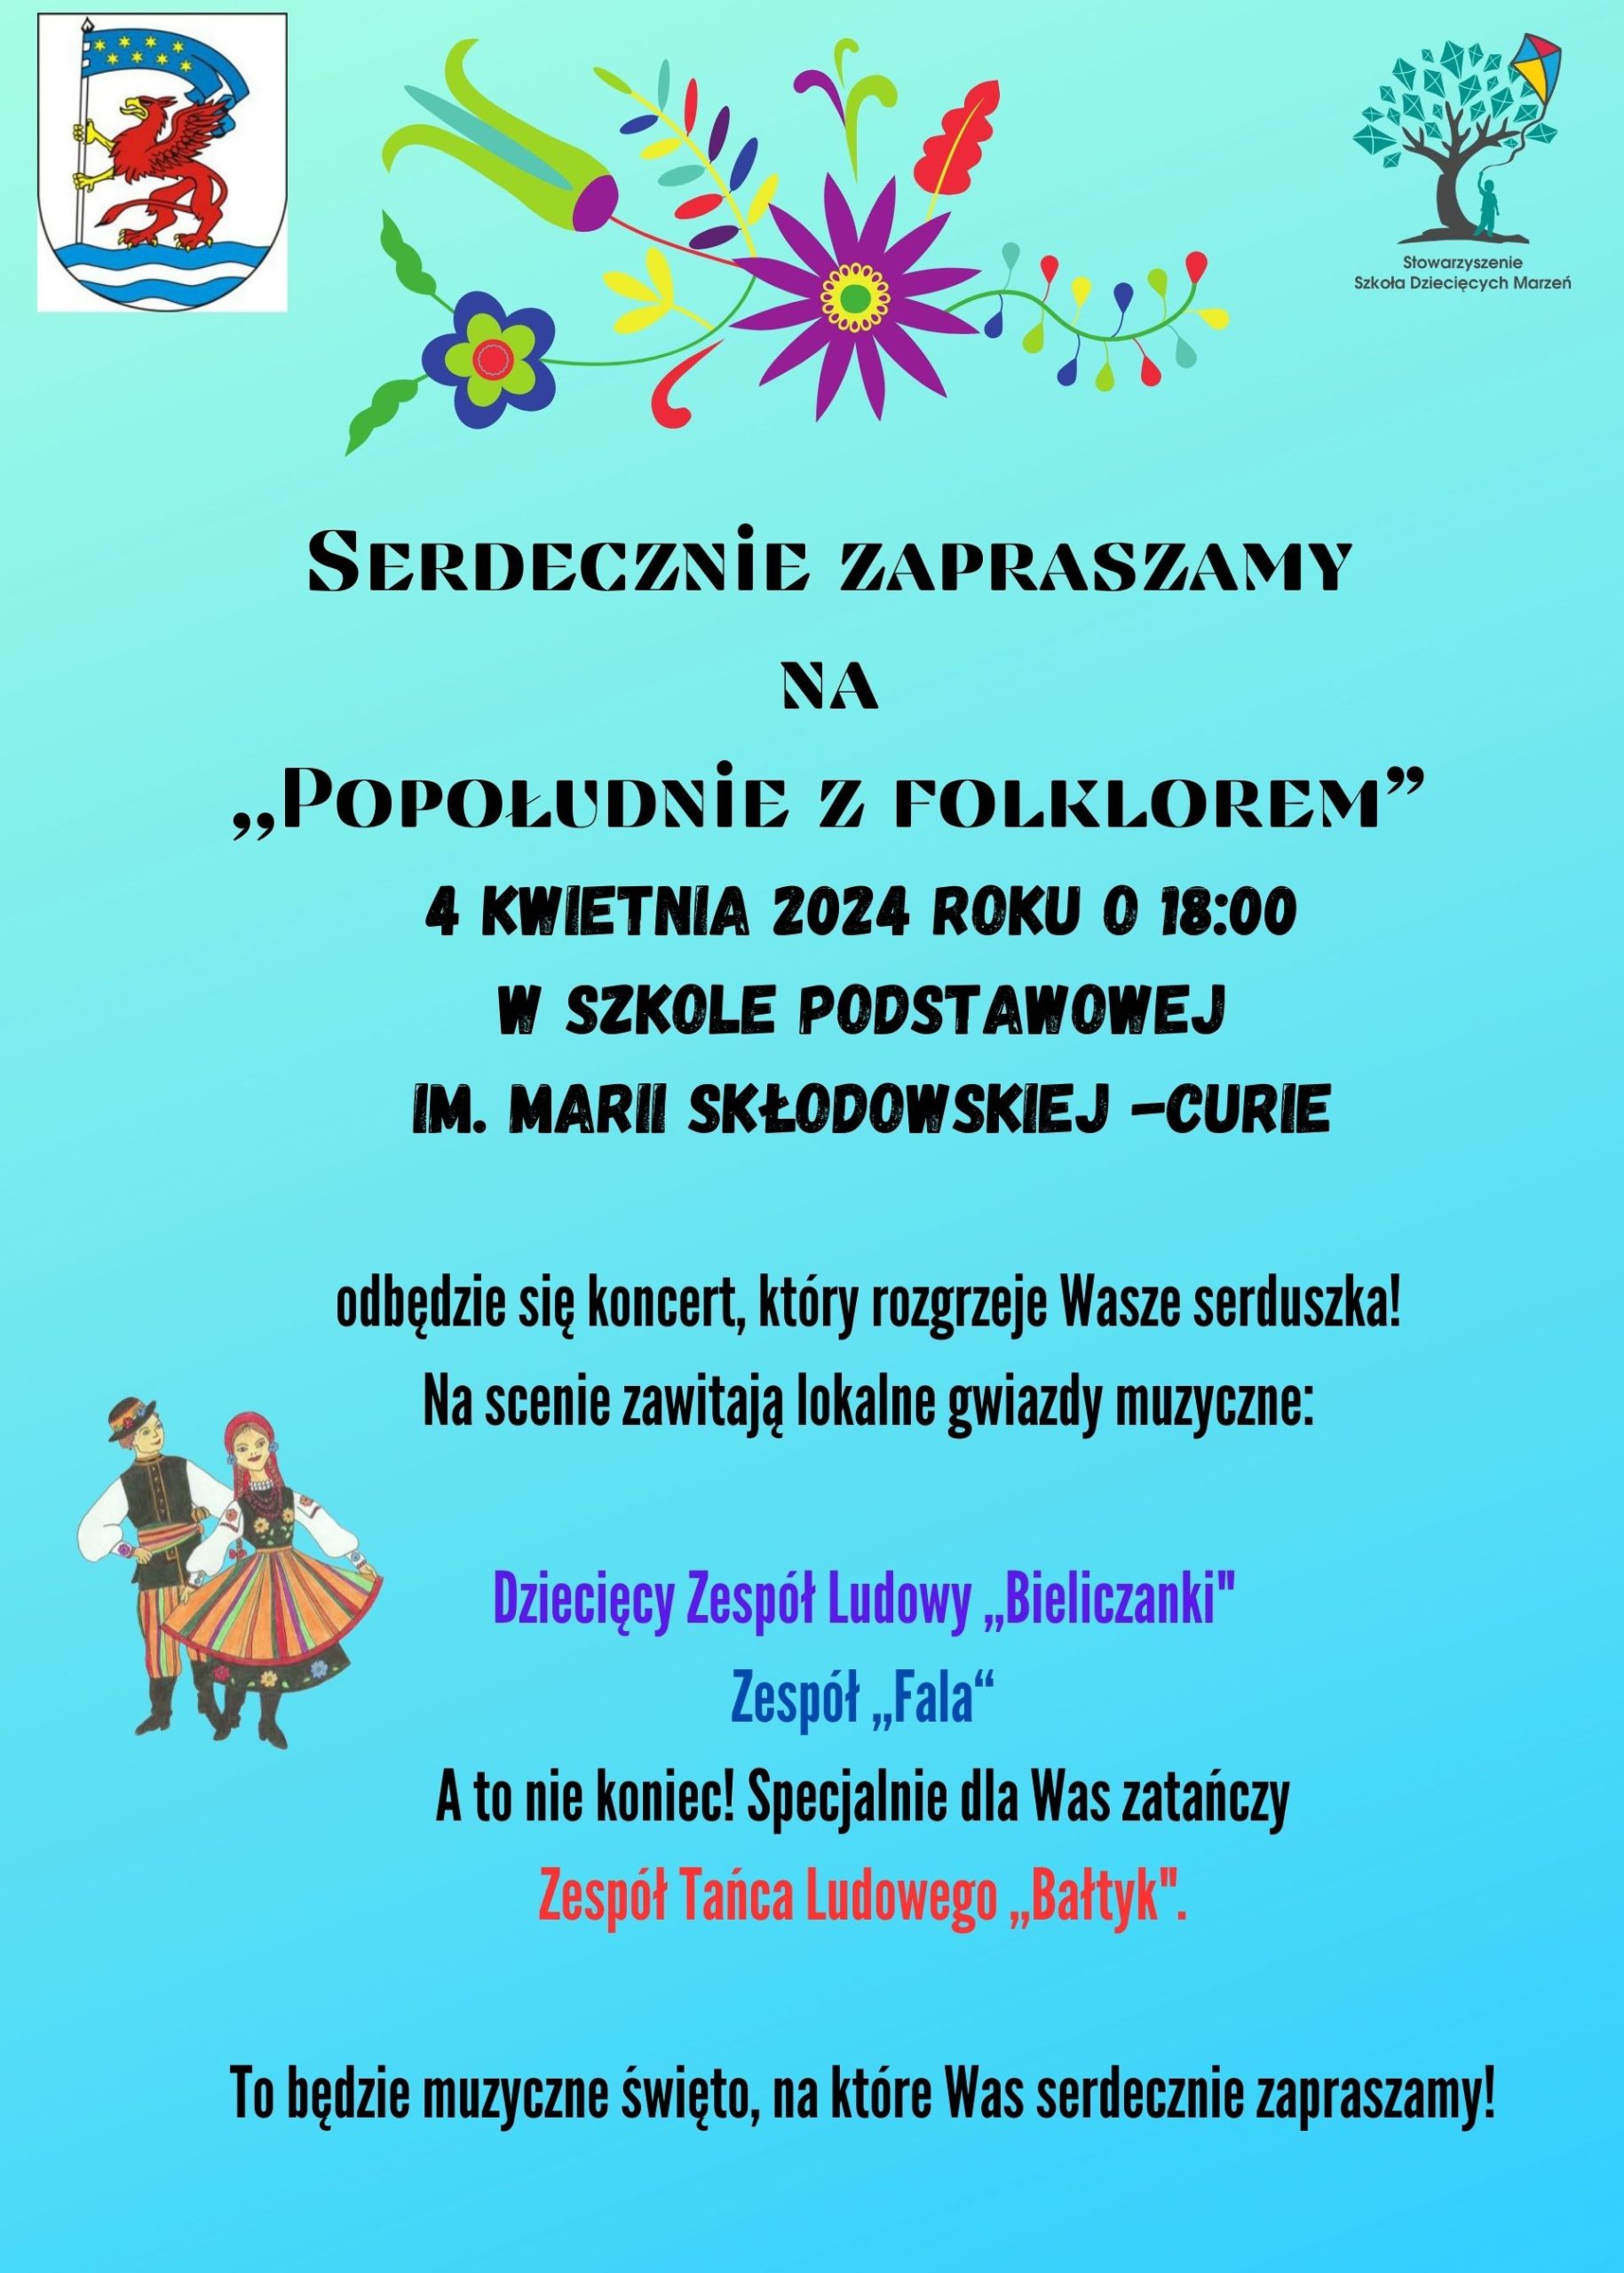 Plakat z informacją o koncercie popołudnie z folklorem w Starych Bielicach 4 kwietnia 2024